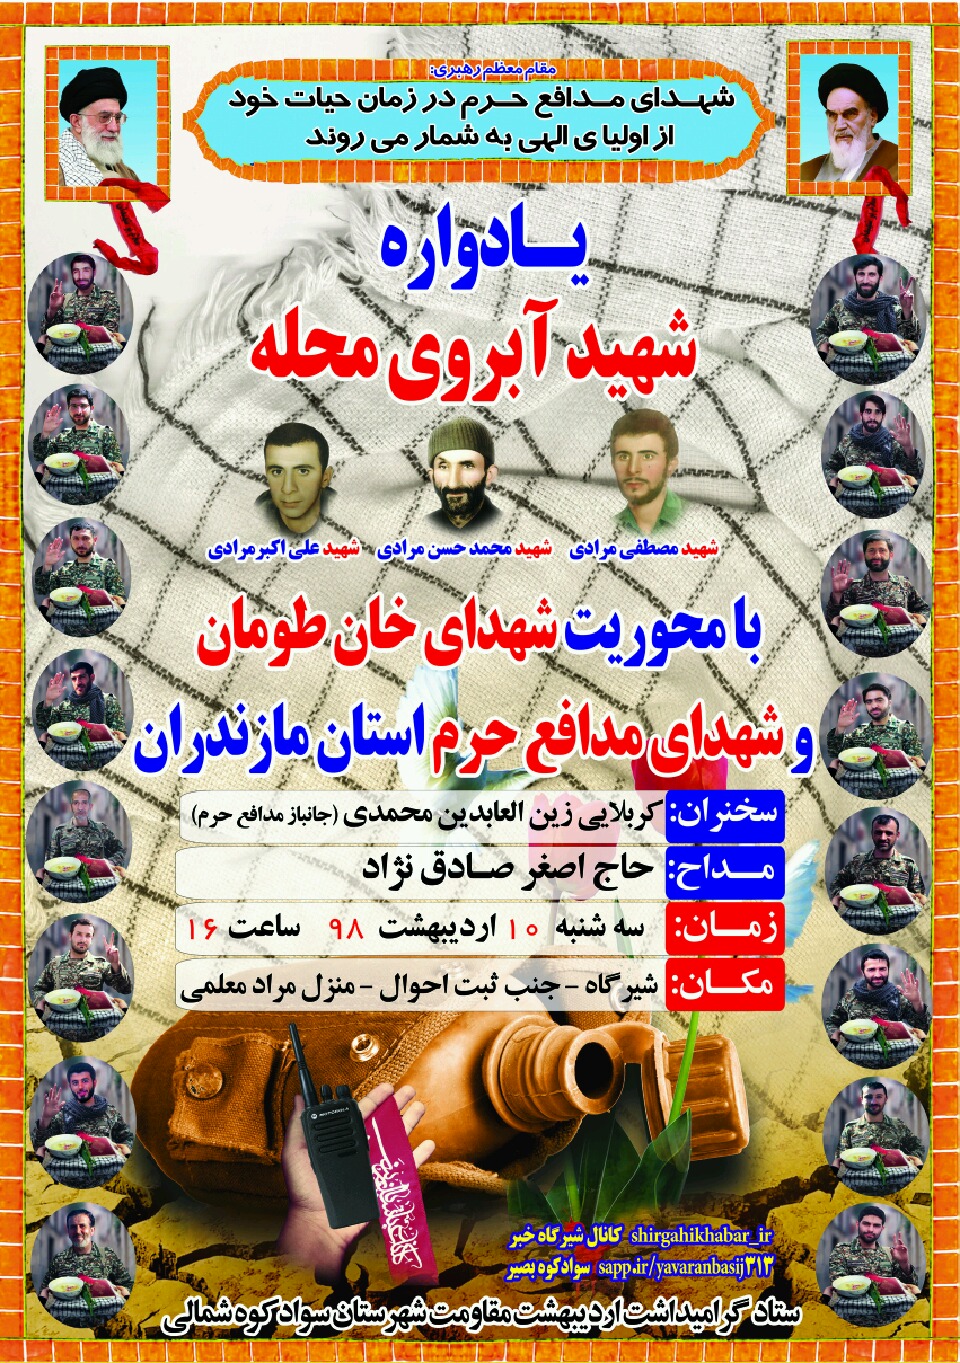 یادواره شهید آبرومحله با محوریت شهدای خان طومان و شهدای مدافع حرم مازندران در سوادکوه شمالی